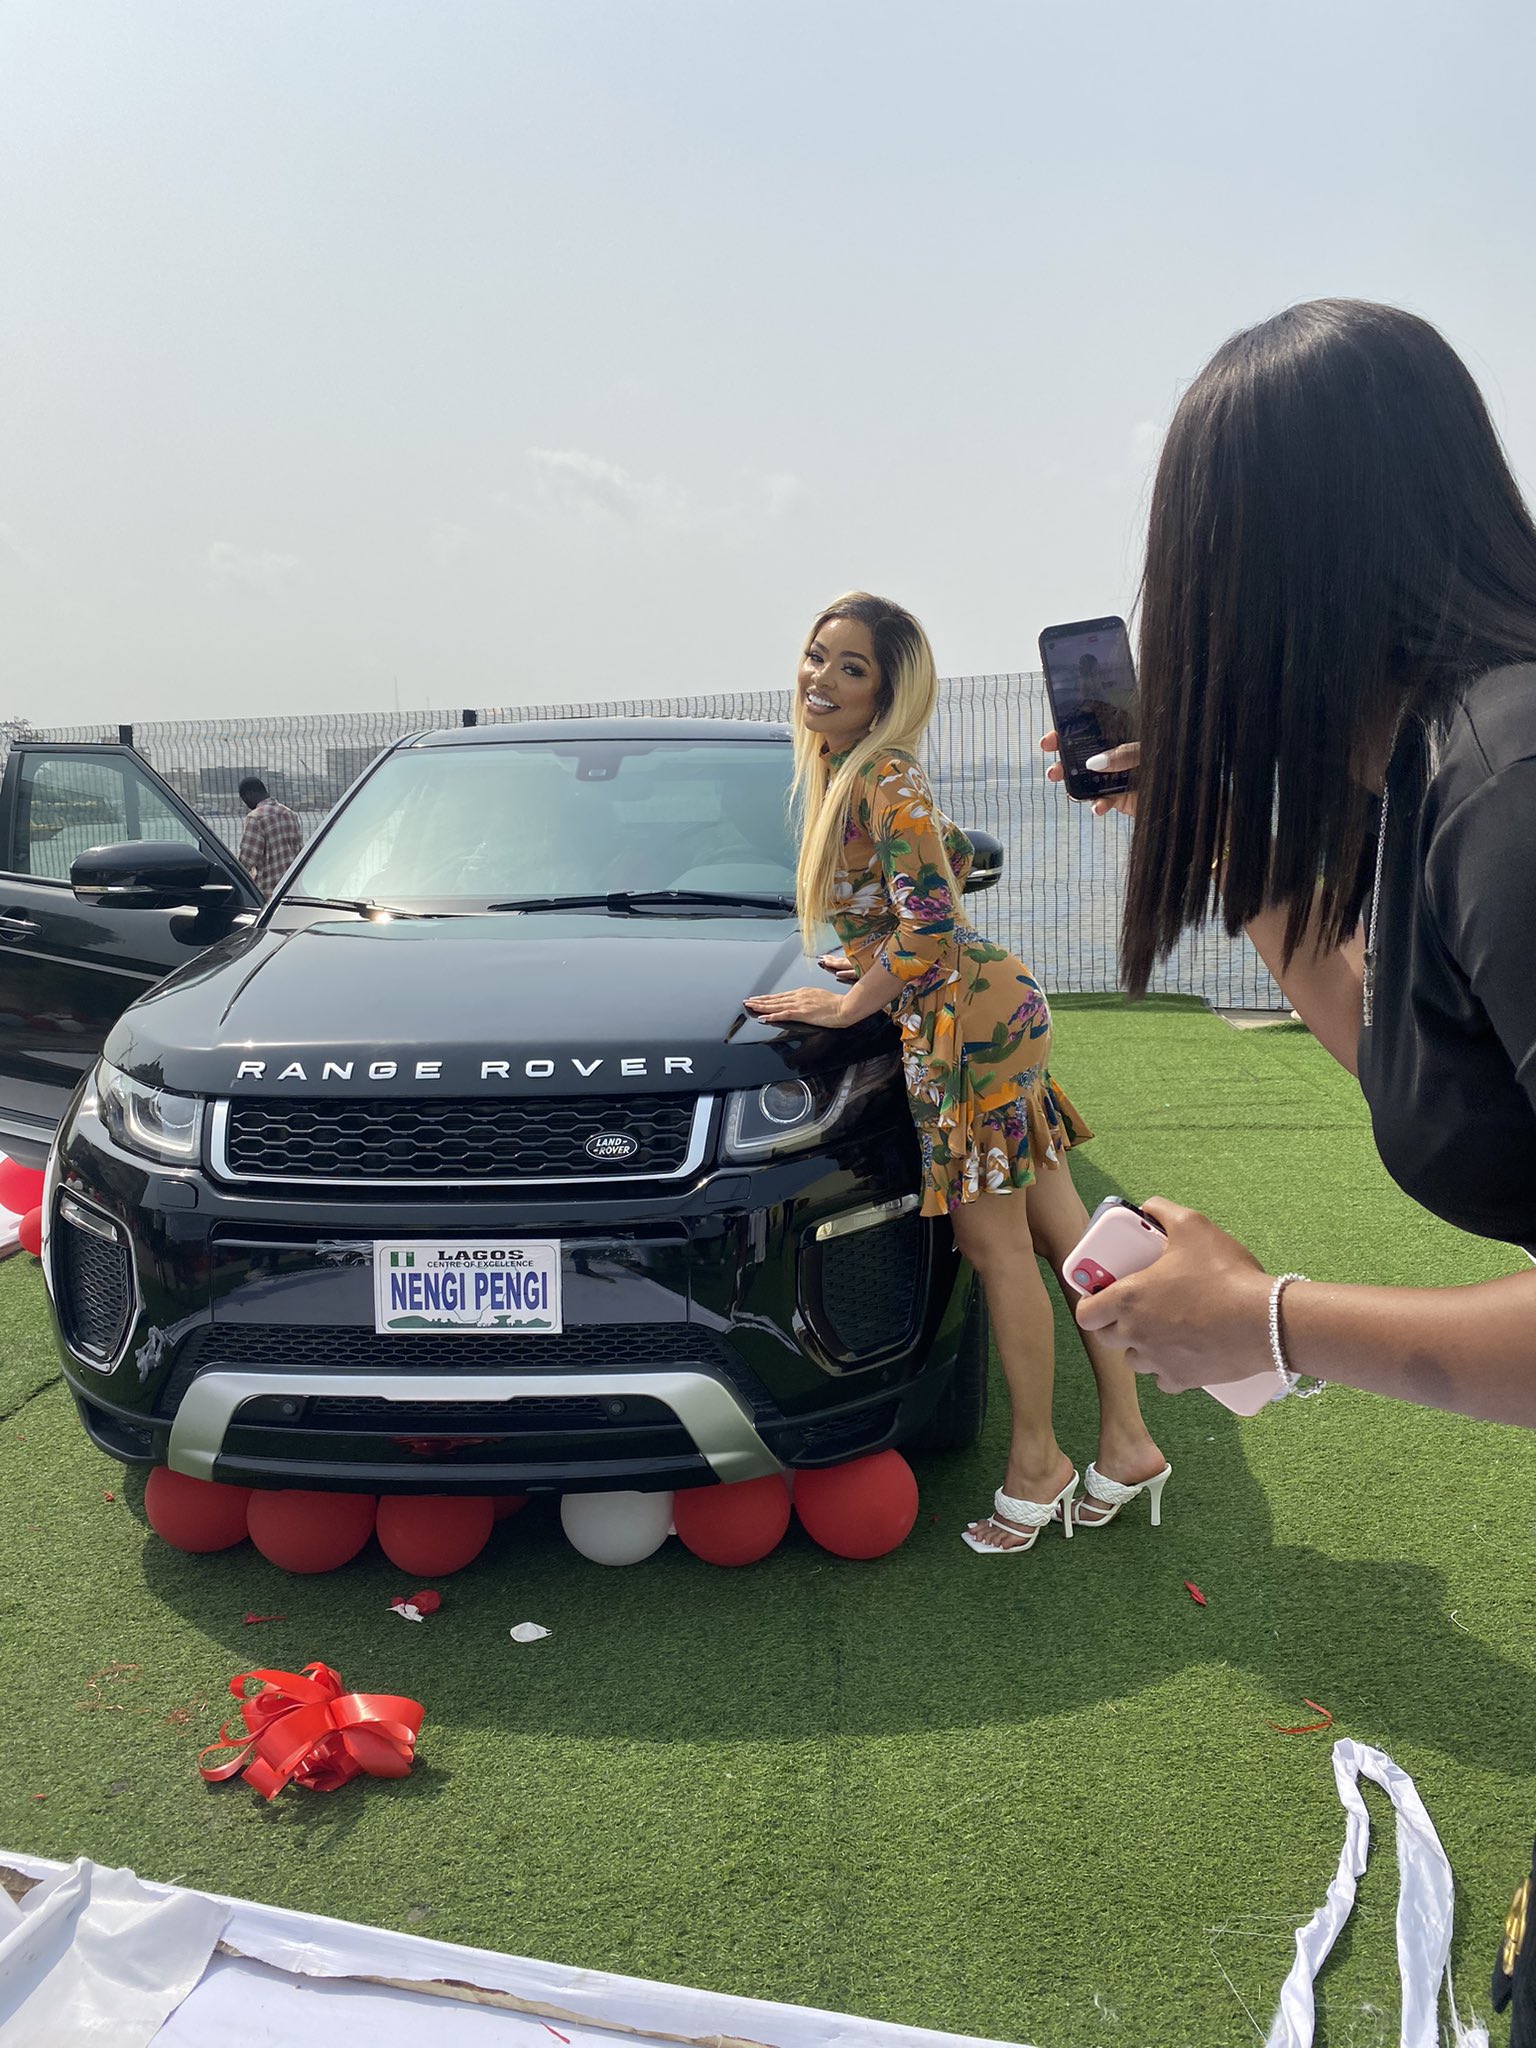 Ninjas Gifts Nengi Brand New Range Rover on Her Birthday [Video]